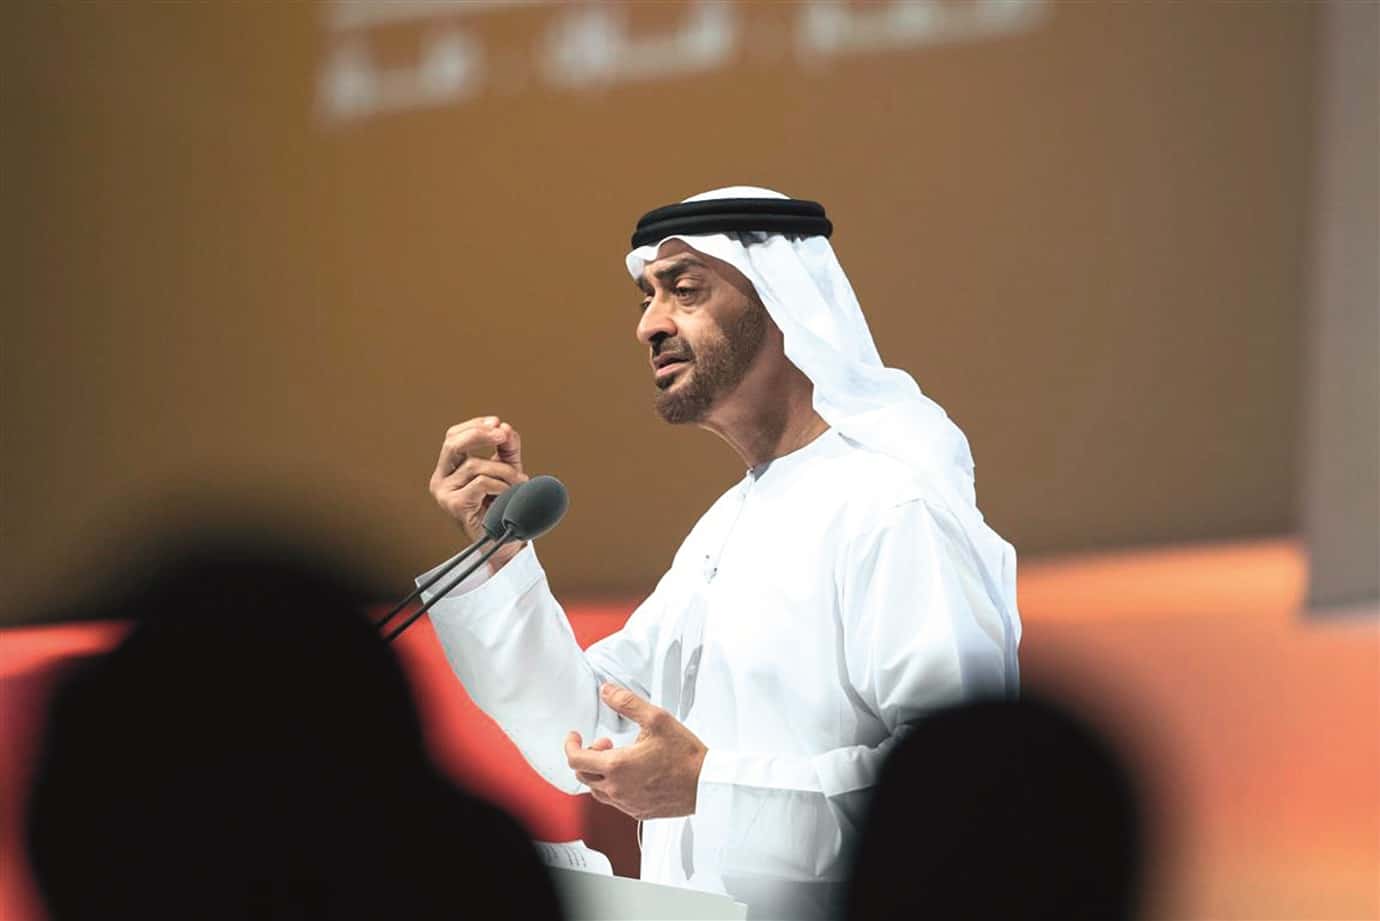 الإمارات ترحل نشطاء تطلب بهم انظمة بلادهم المستبدة watanserb.com